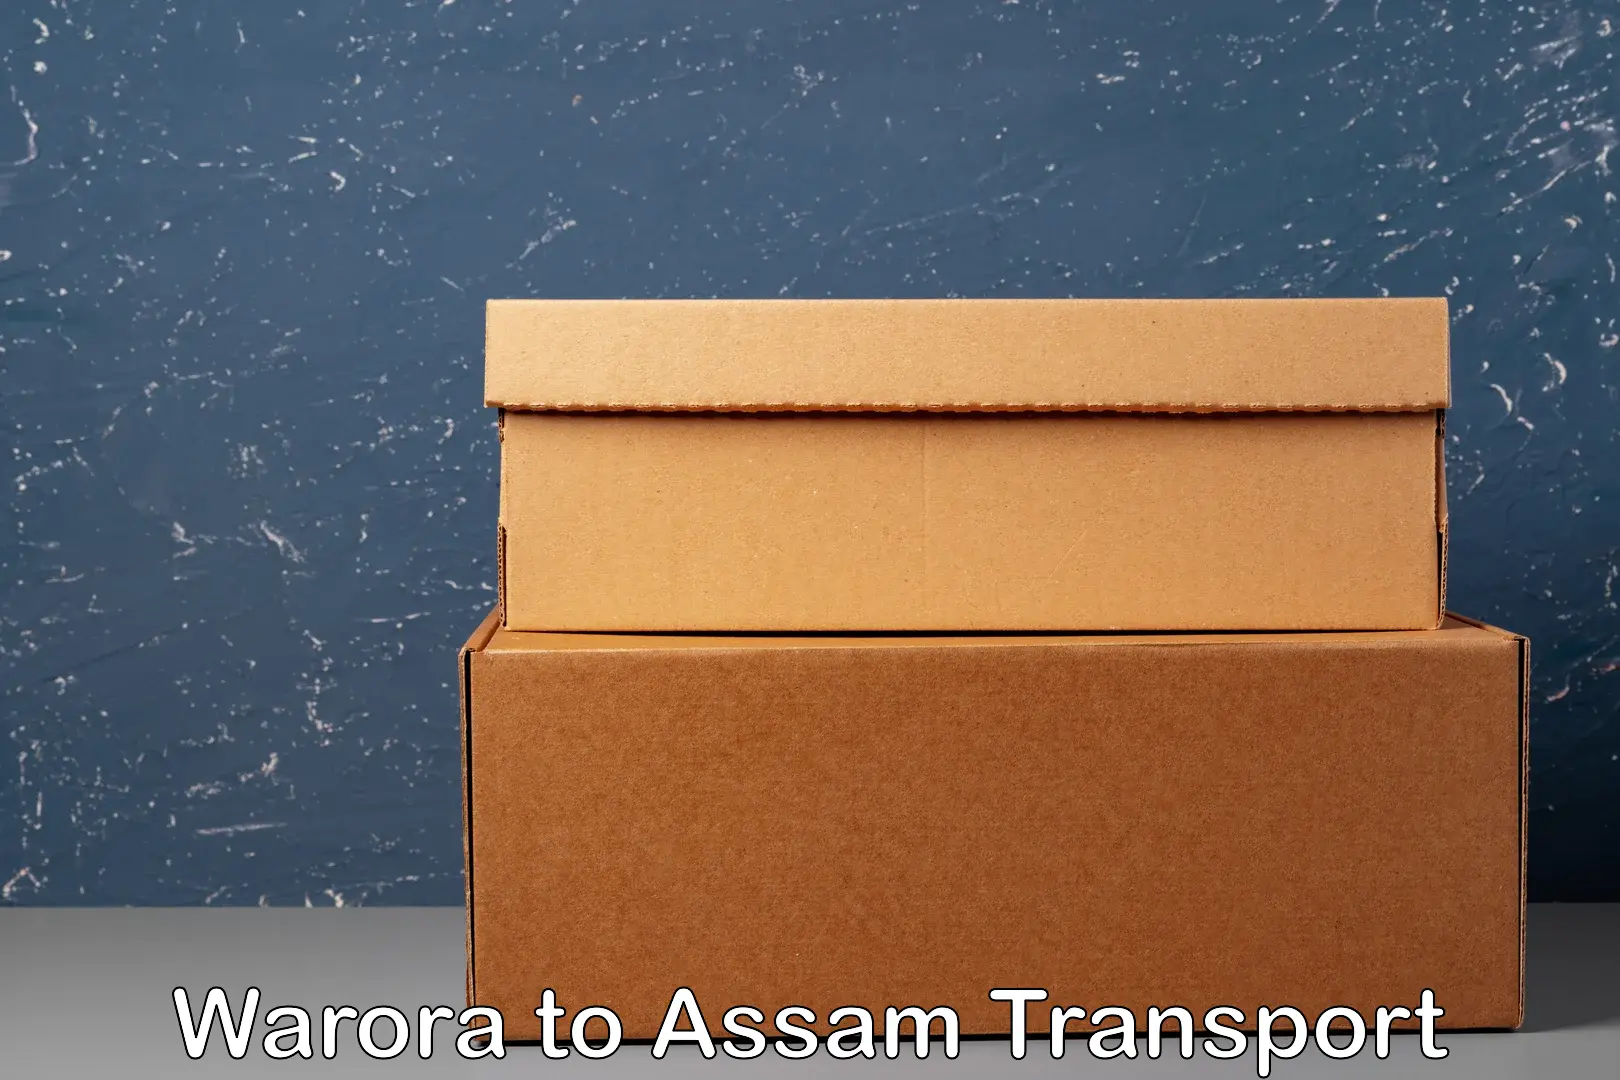 Vehicle transport services Warora to Assam